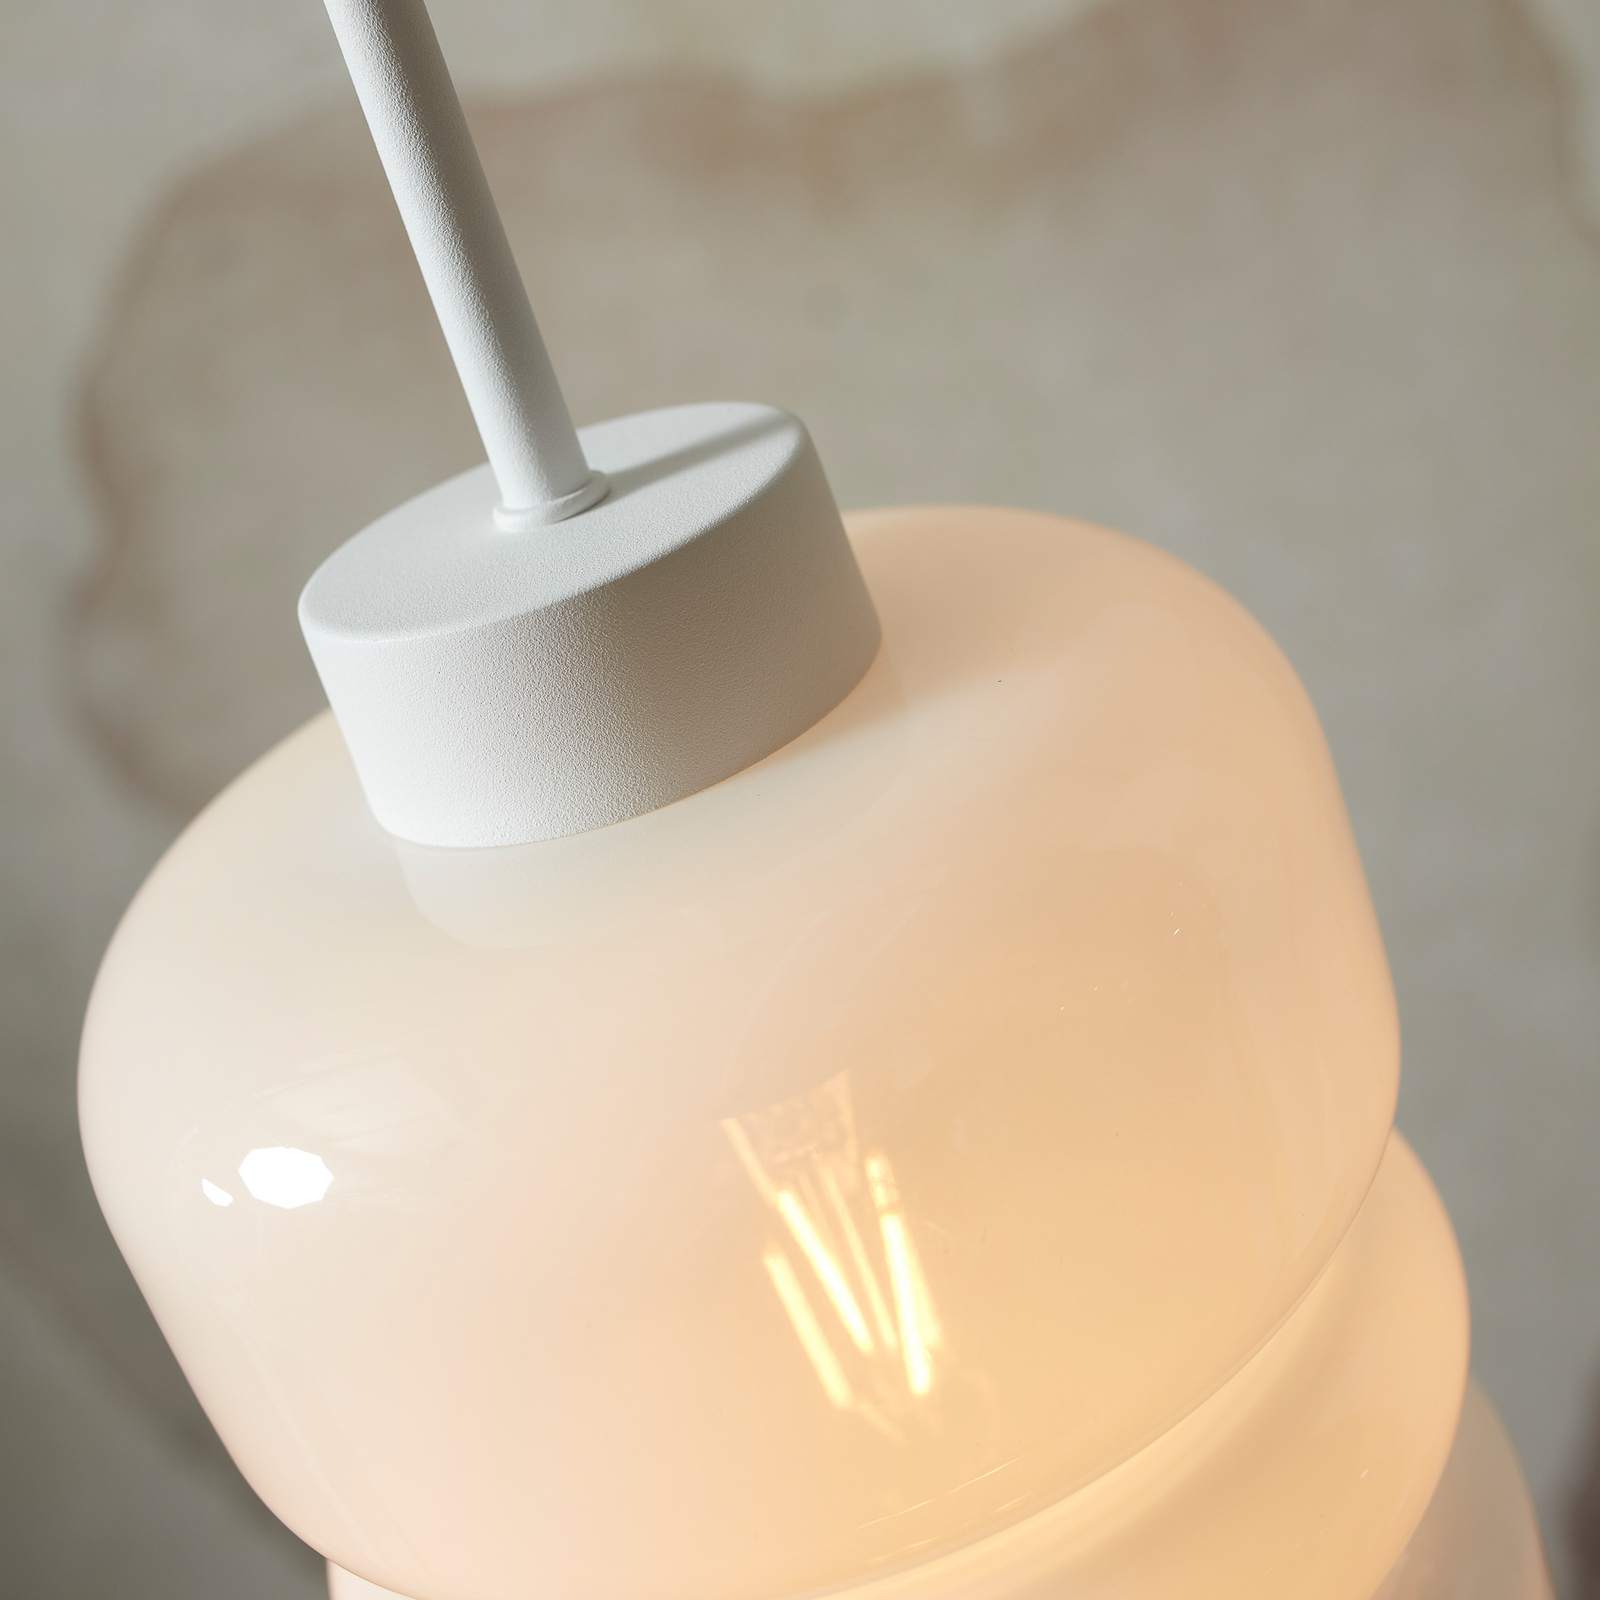 Става въпрос за RoMi висяща лампа Verona, млечнобяла, Ø 15 cm